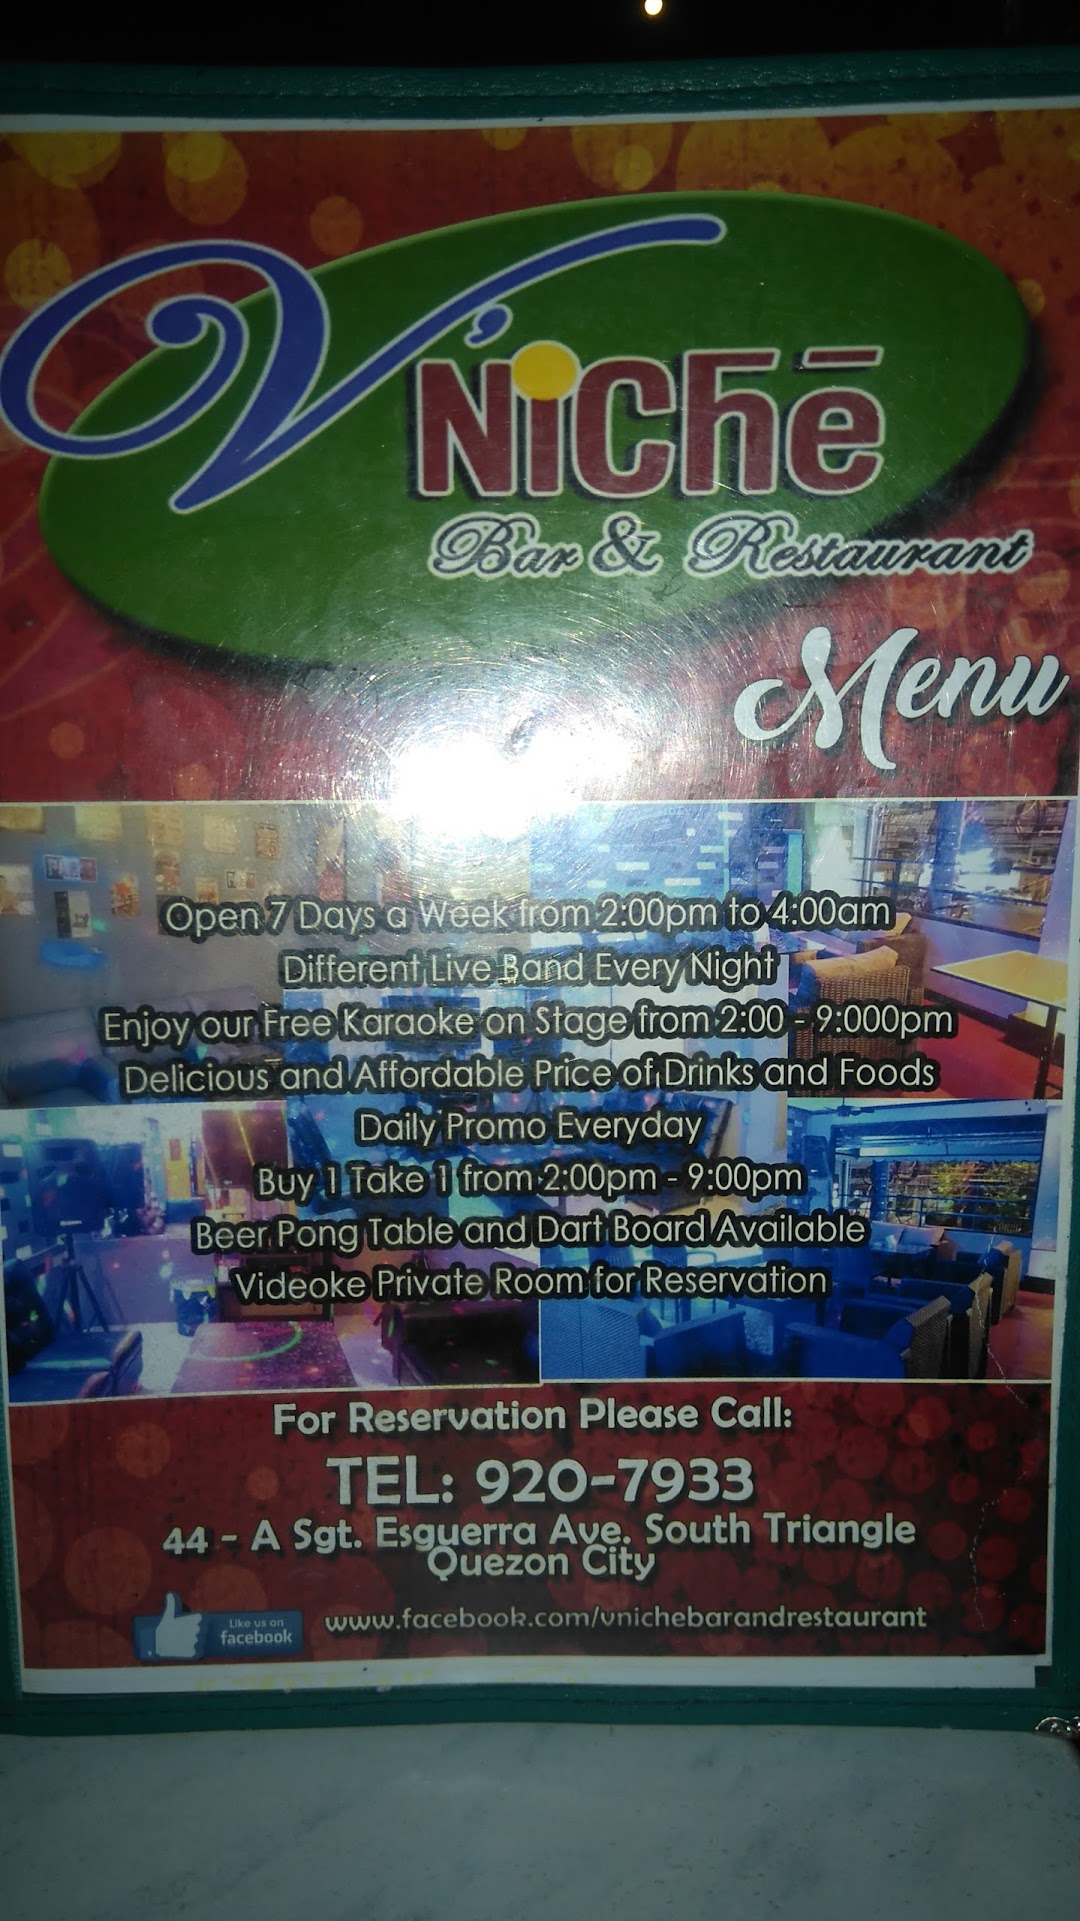 V Niche Bar and Restaurant